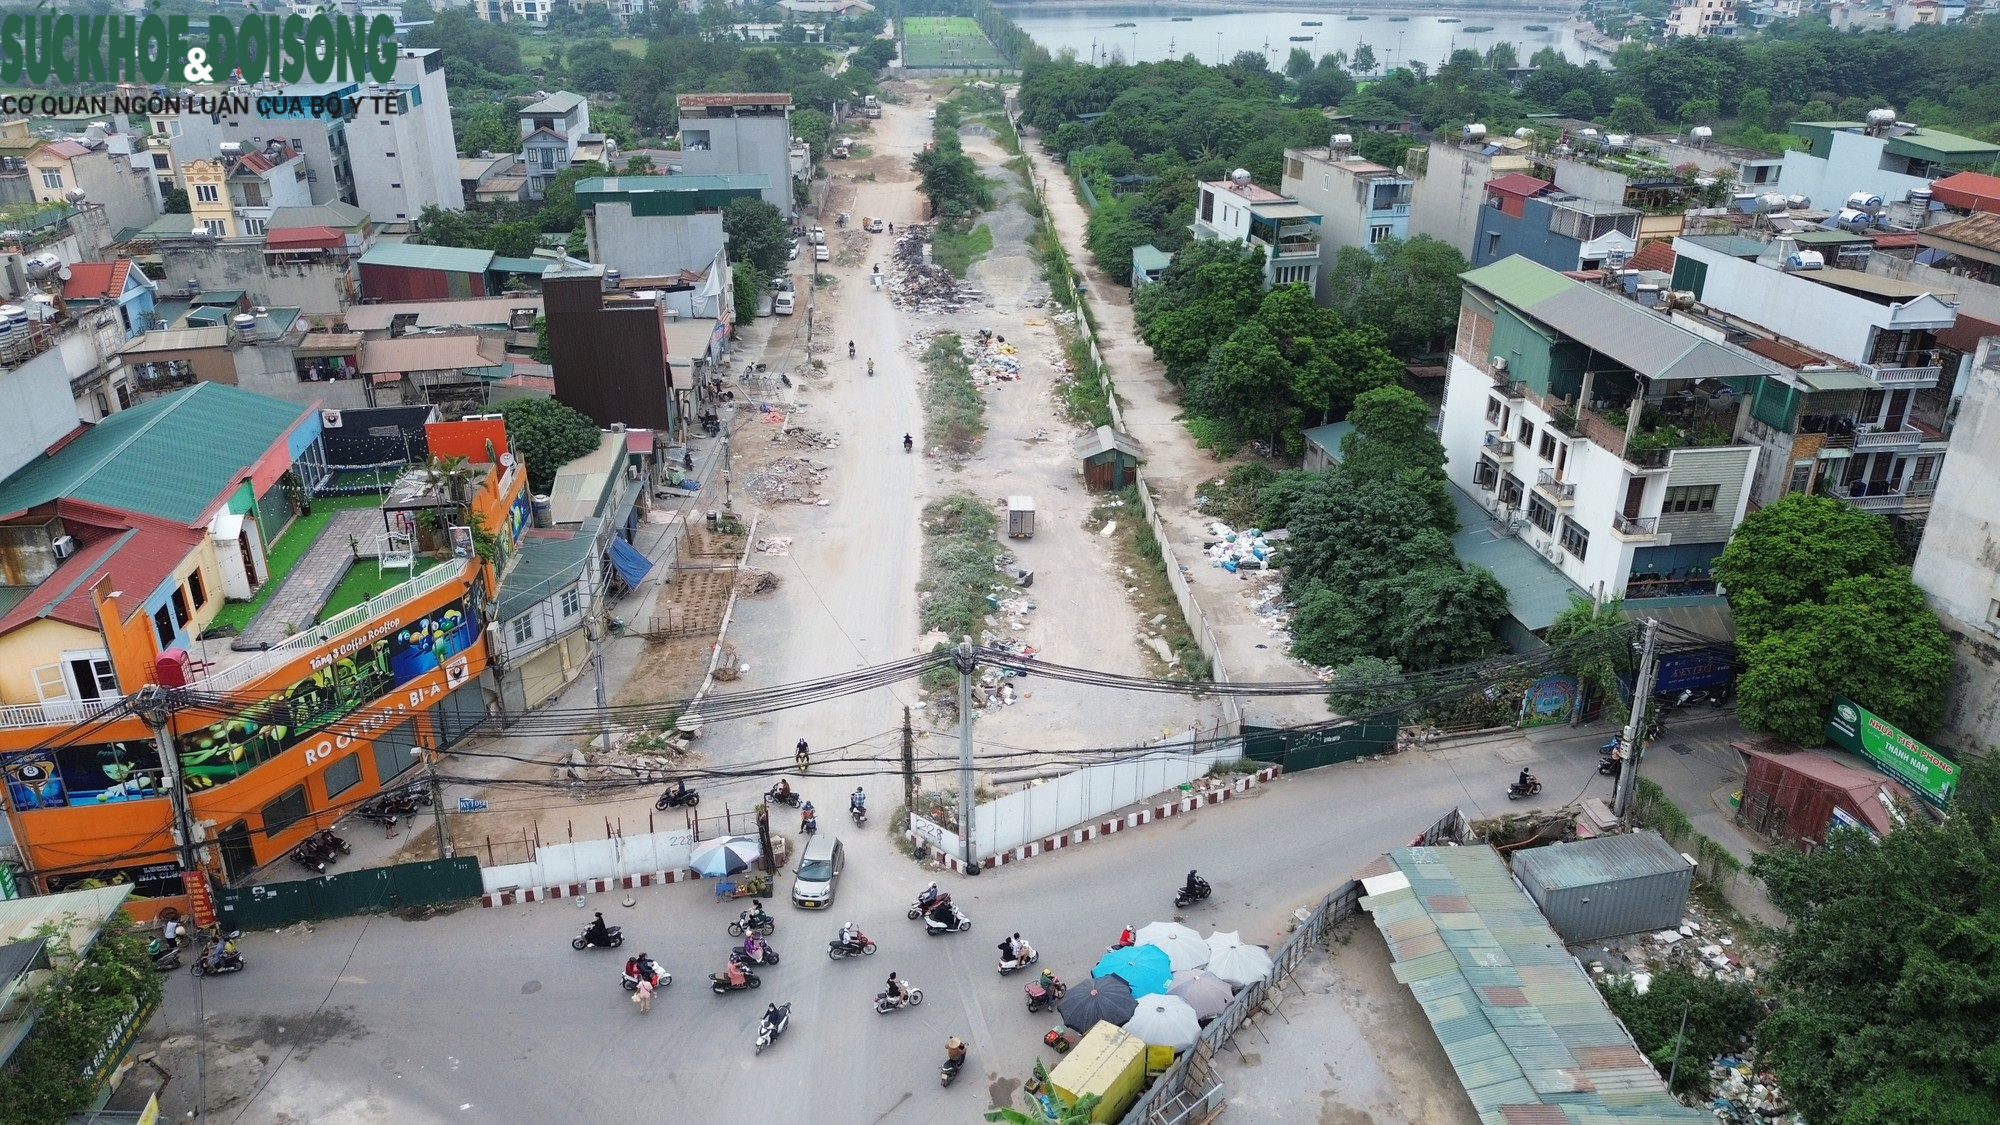 Cận cảnh khu vực rào bê tông chắn đường dân được Hà Nội yêu cầu phá bỏ - Ảnh 8.